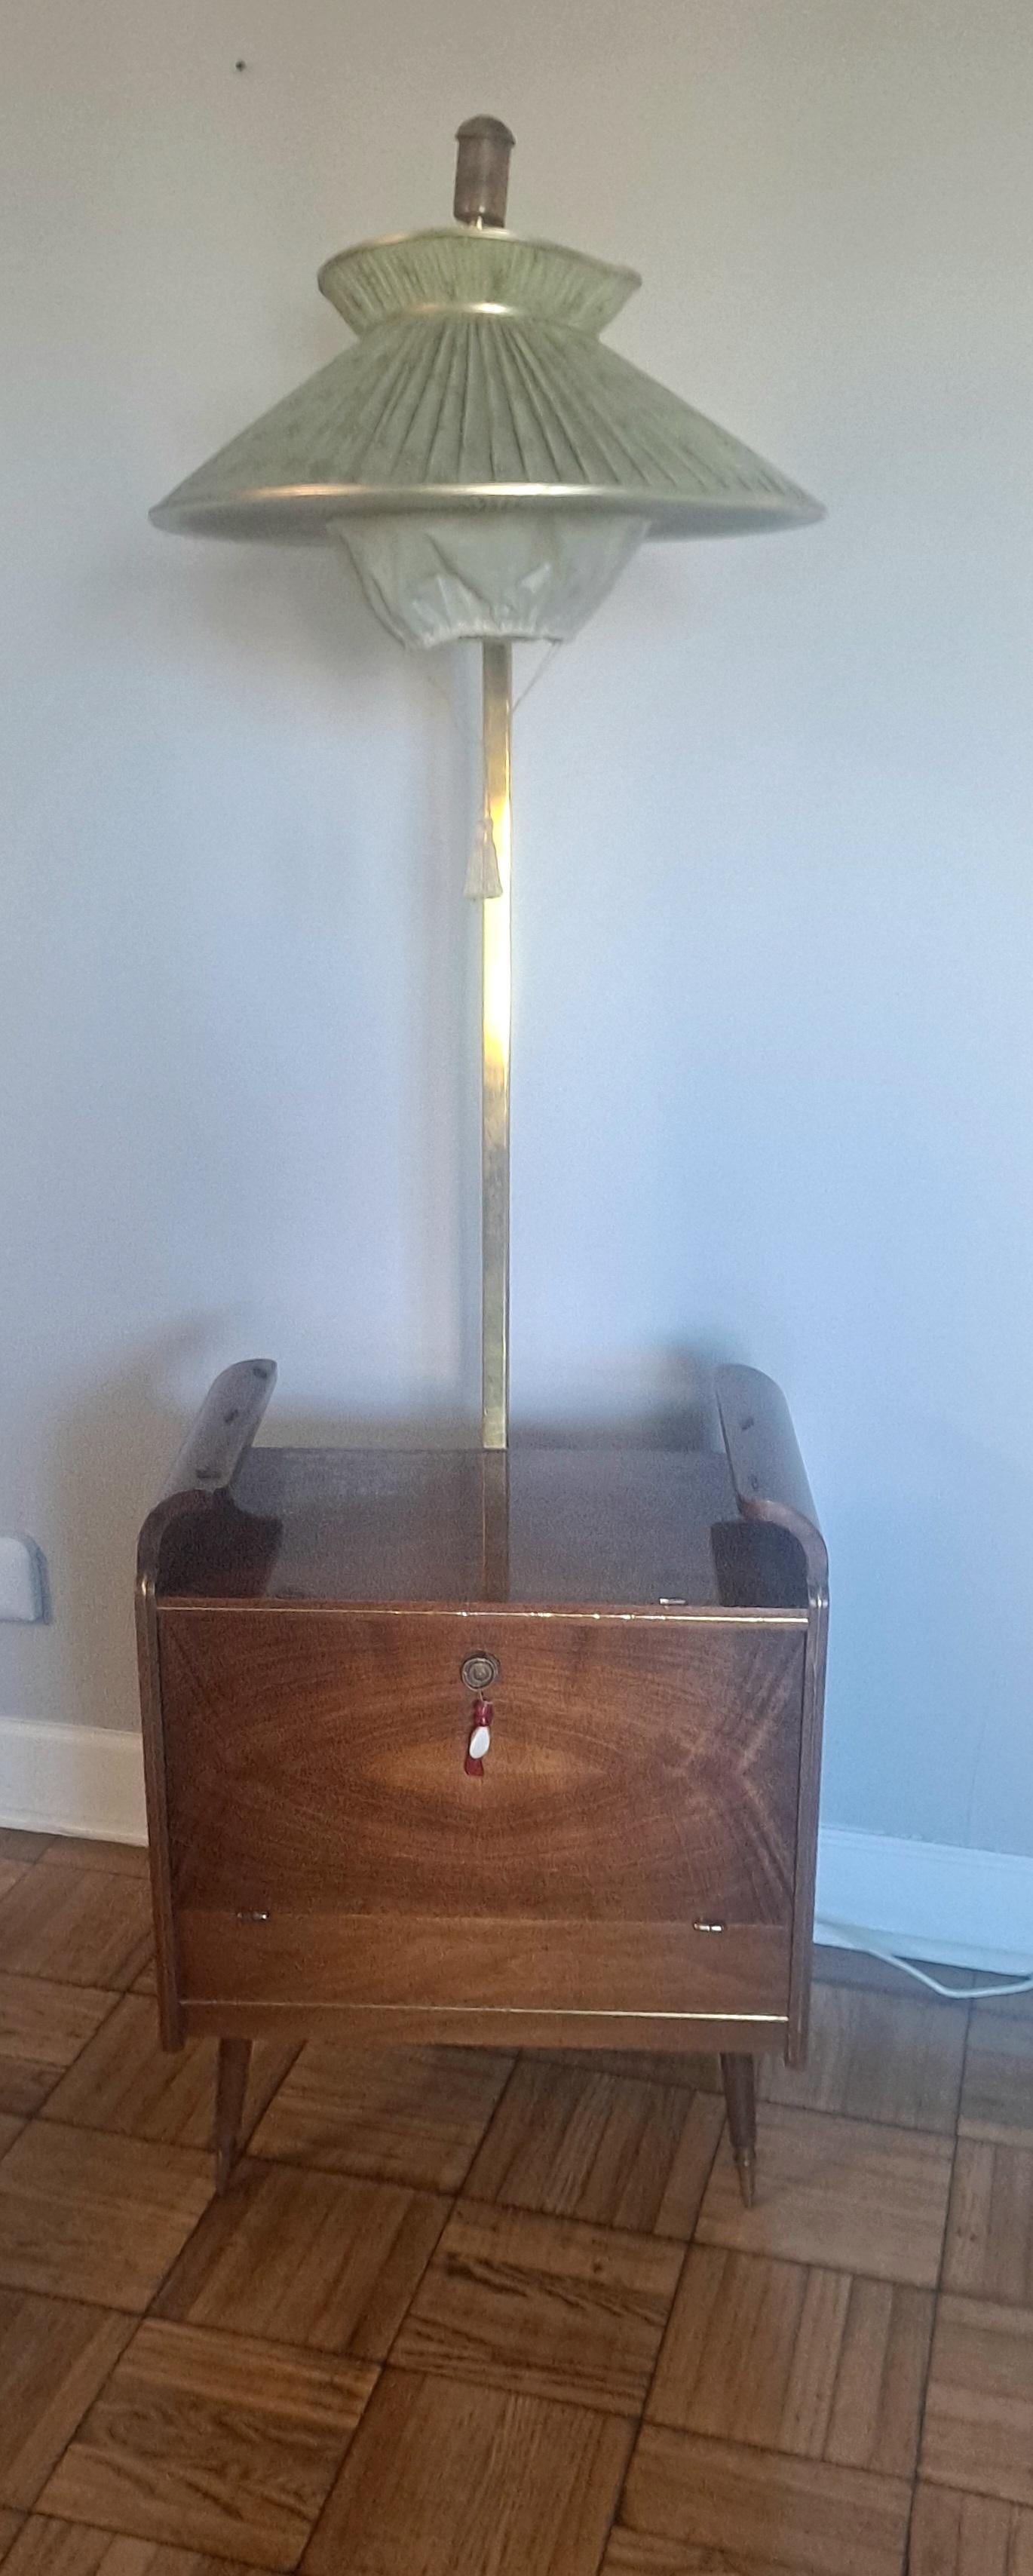  Lampadaire italien des années 1950 -dry bar. Le bar sec a 2 ampoules et  lorsque la porte se ferme, l'interrupteur s'éteint automatiquement. L'interrupteur du lampadaire se trouve dans le dos du cou du sol. Les pieds en laiton se trouvent au bas de